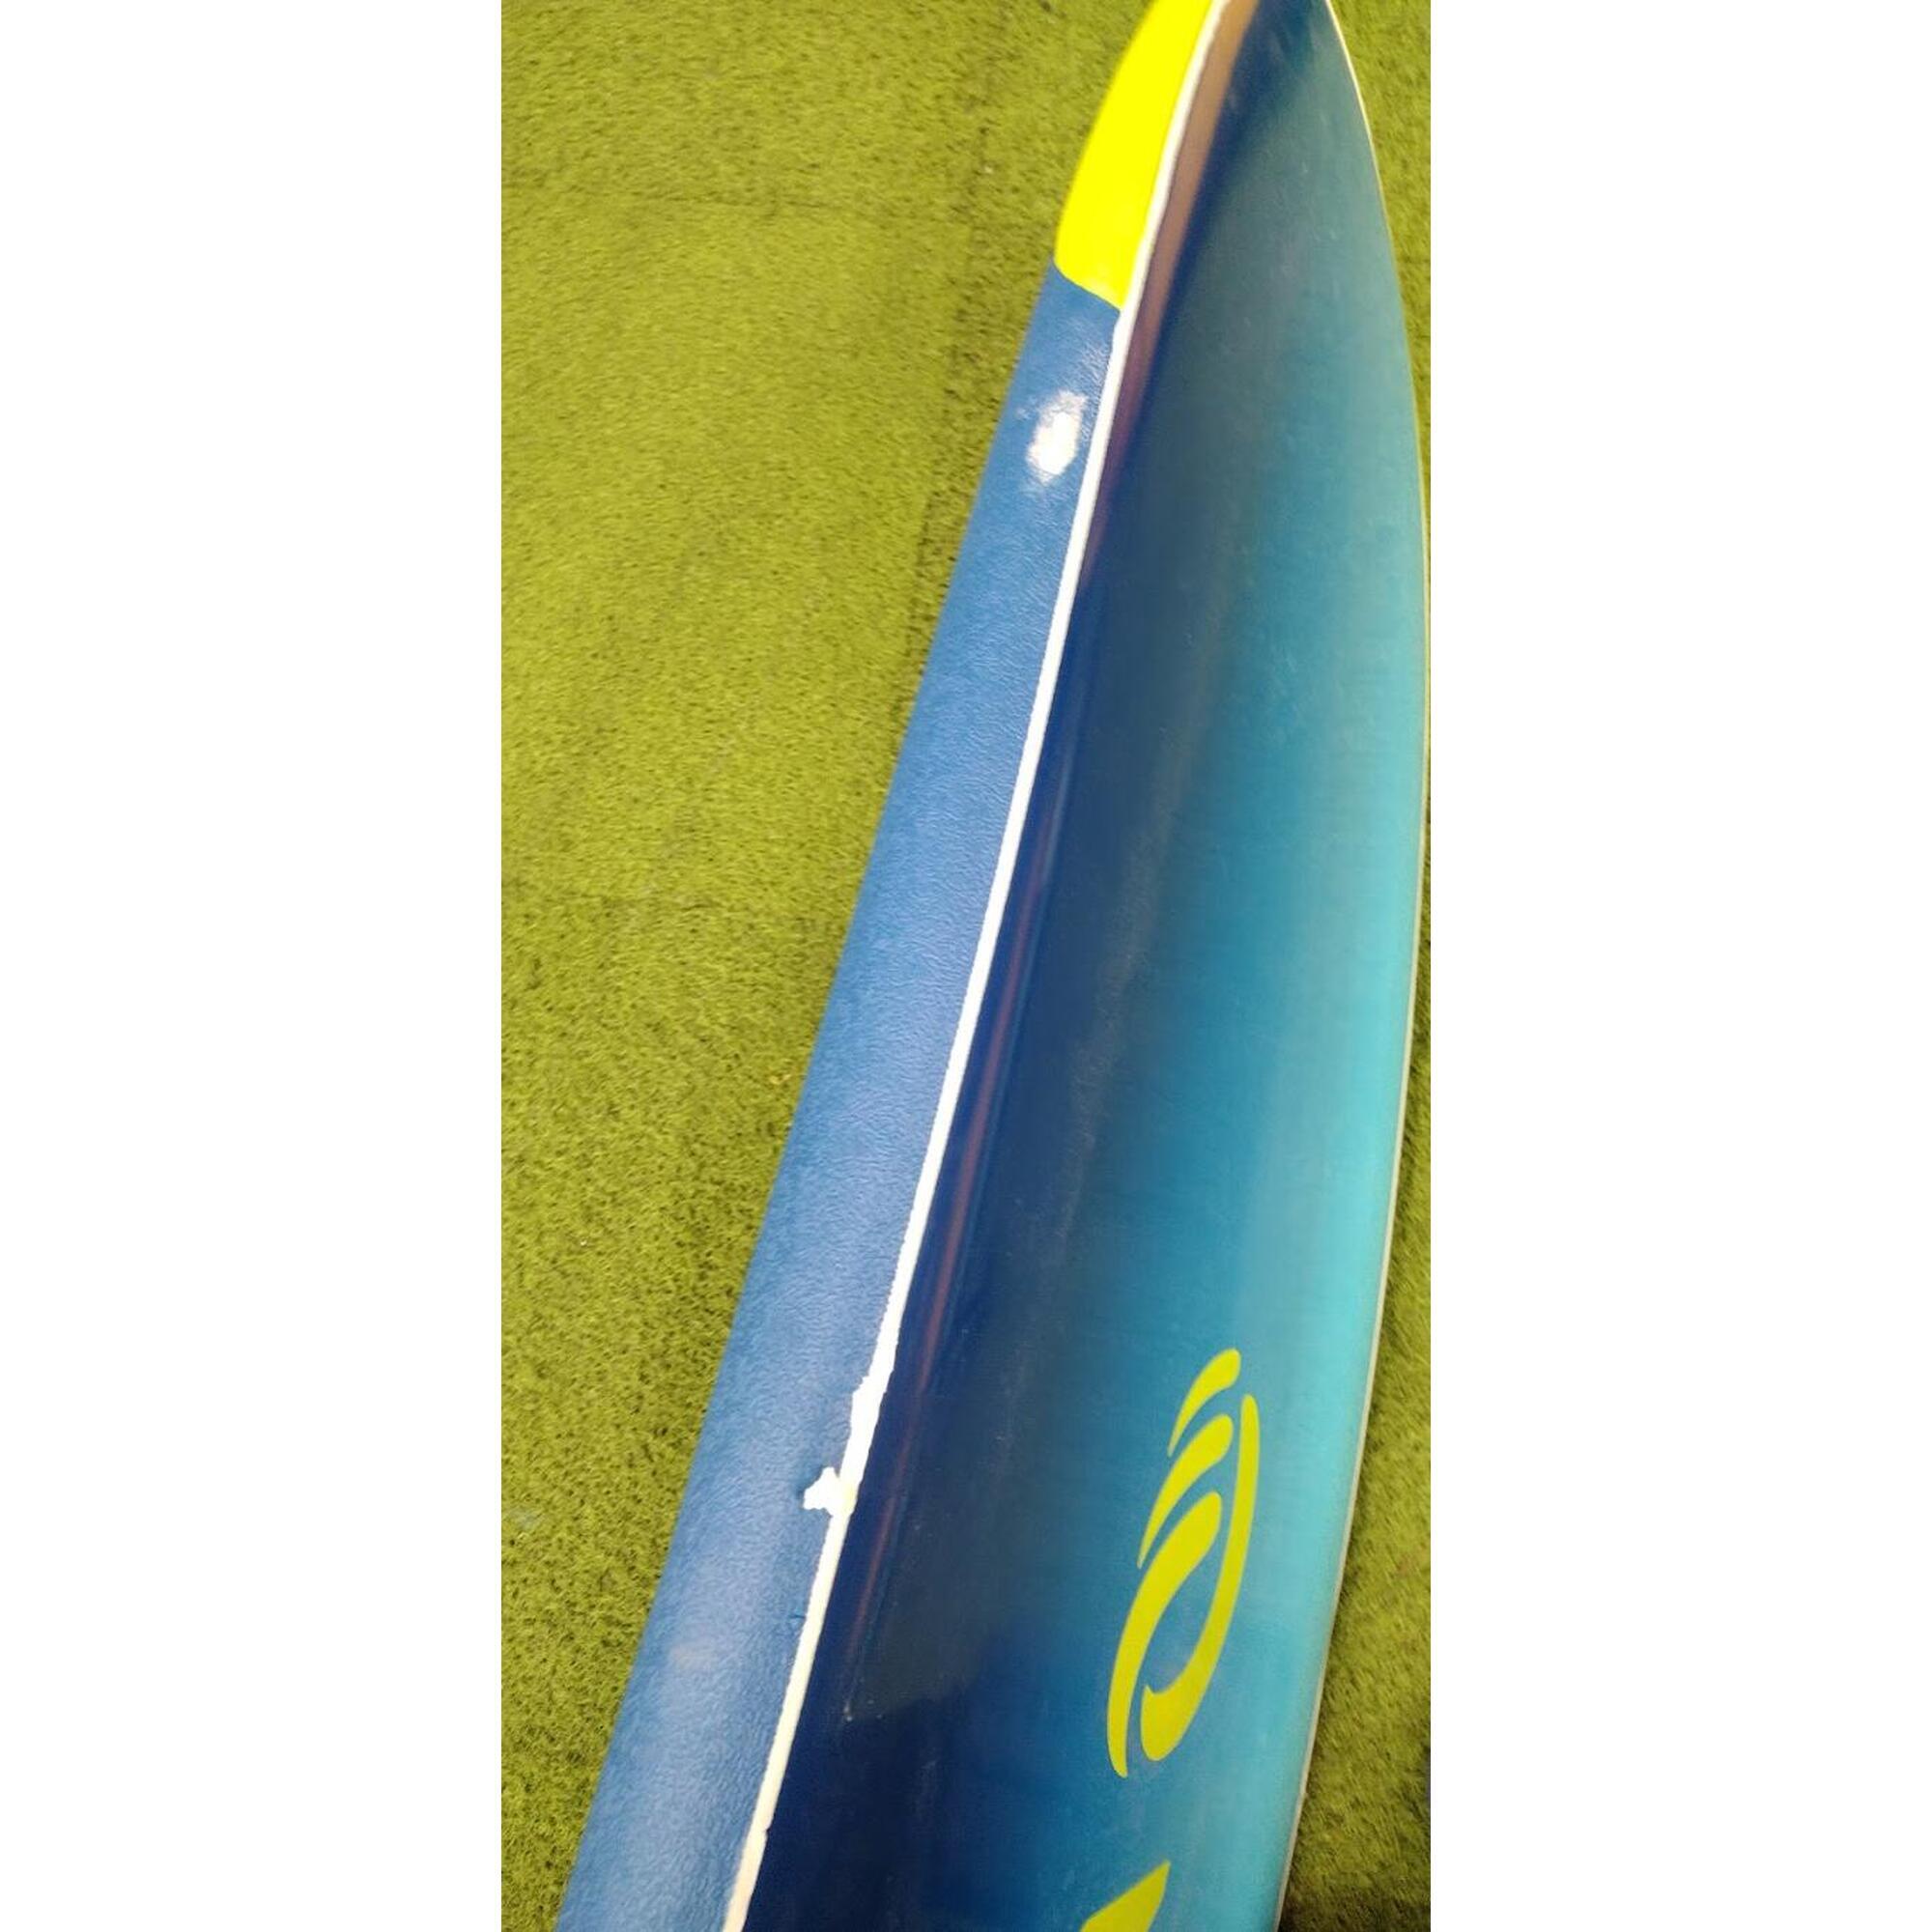 PRANCHA DE SURF EM ESPUMA 8'6' 500 - SEGUNDA VIDA: MUITO BOM ESTADO